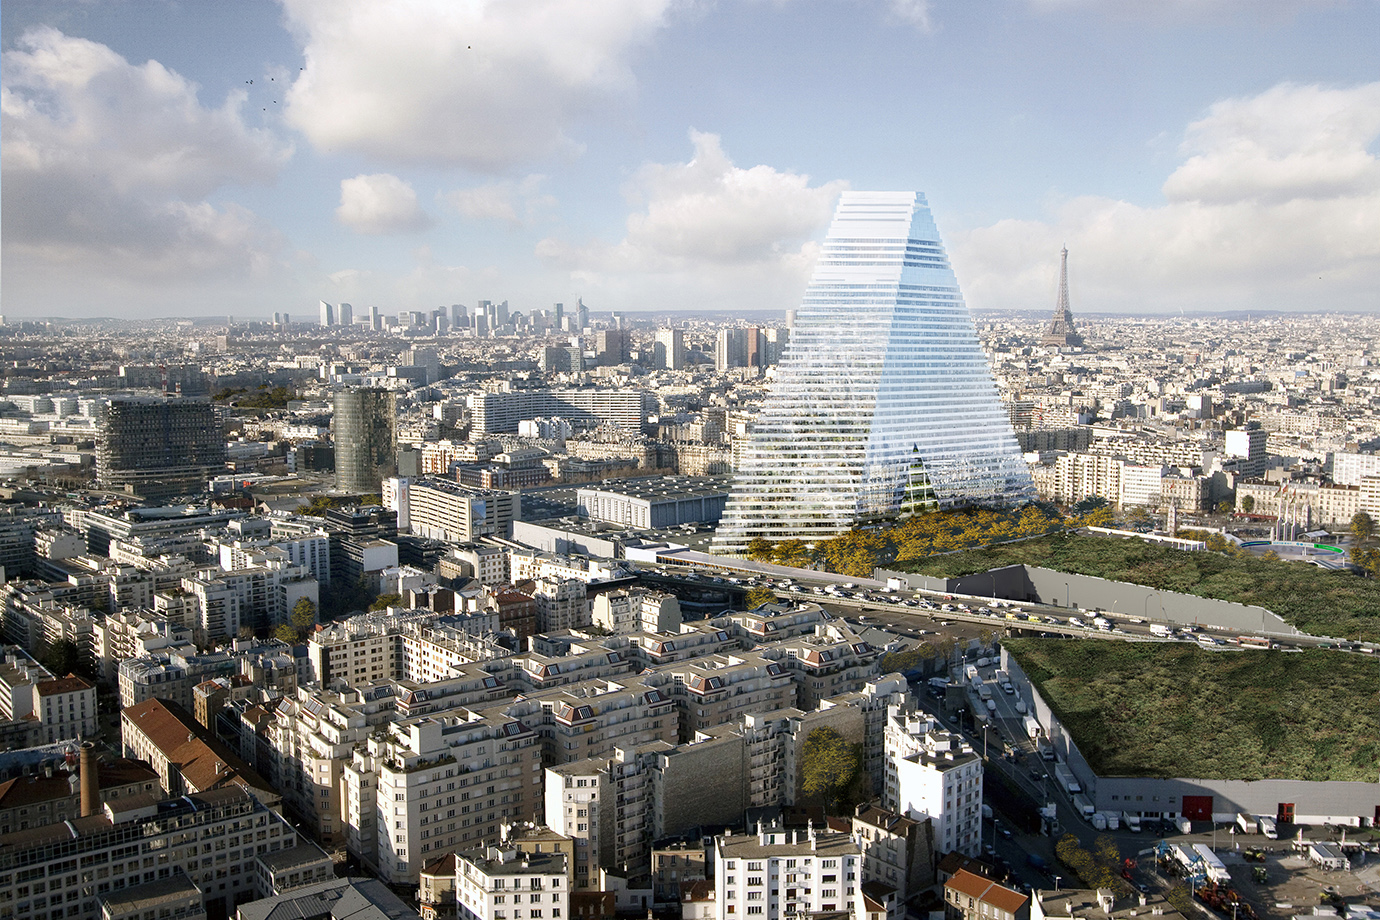 Omstreden 'driehoekstorenflat' in aanbouw in Parijs